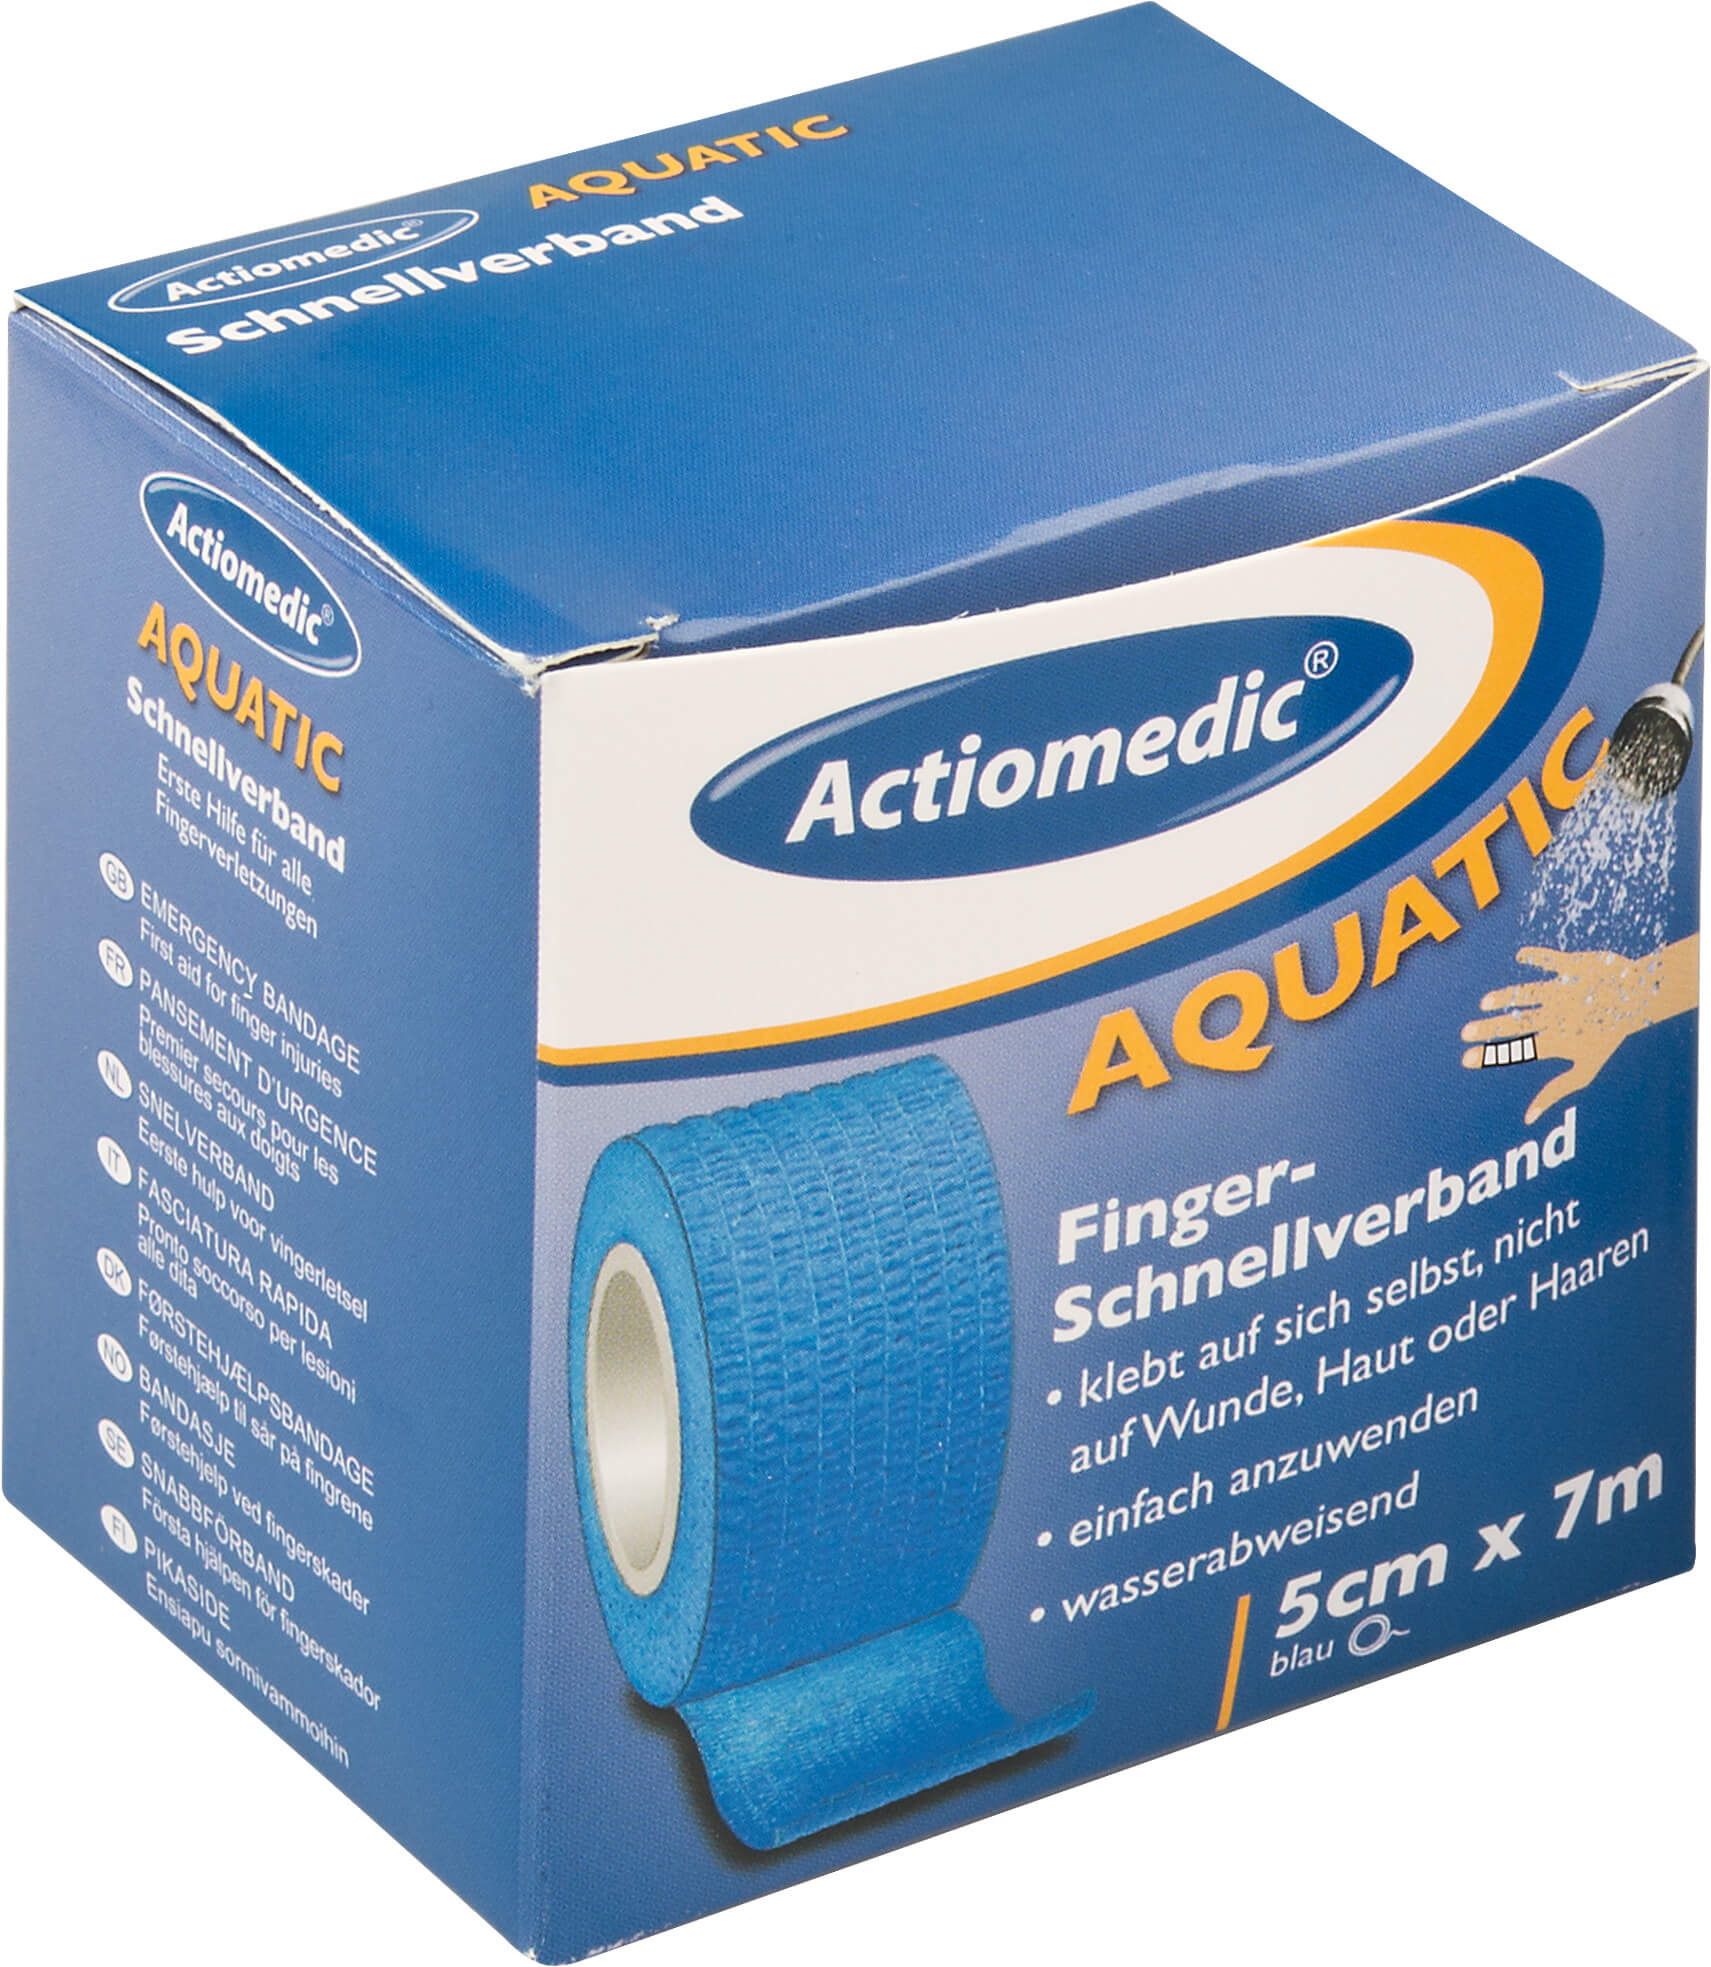 Schnellverband, Aquatic - Actiomedic, 5cm x 7m, blau